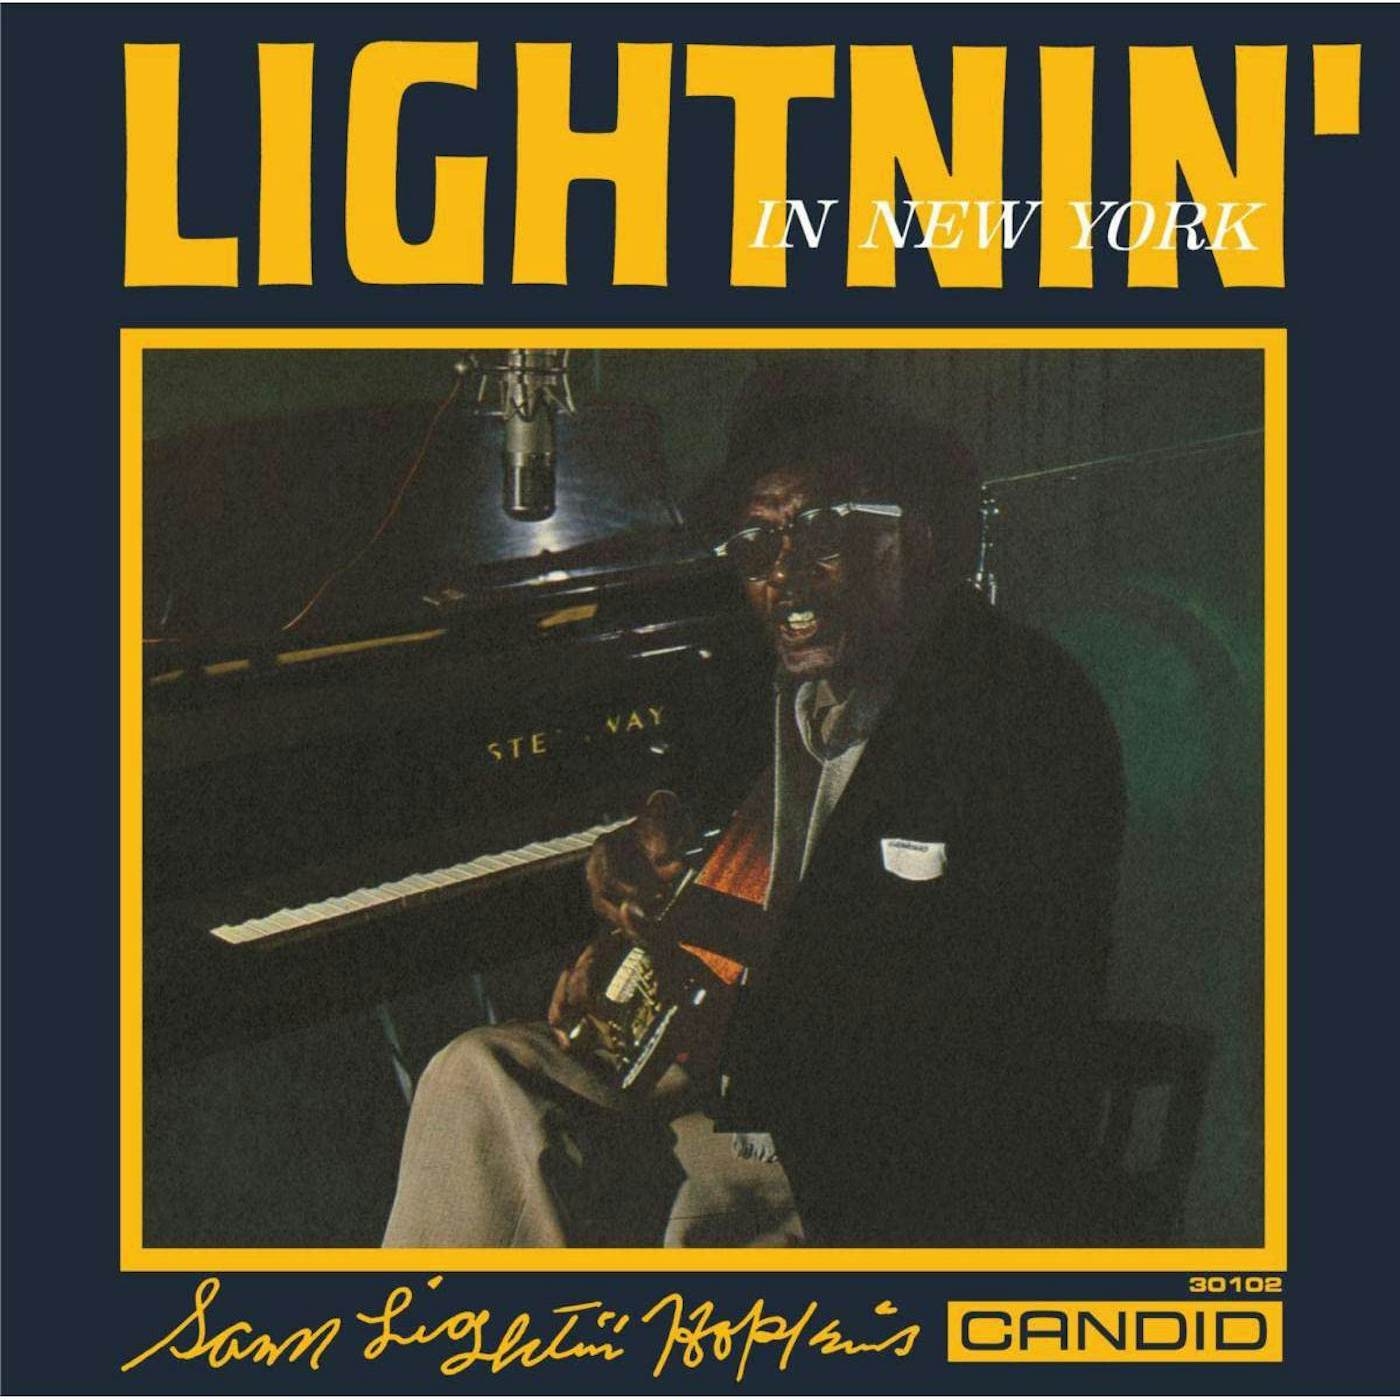 Lightnin' Hopkins Lightnin' In New York Vinyl Record